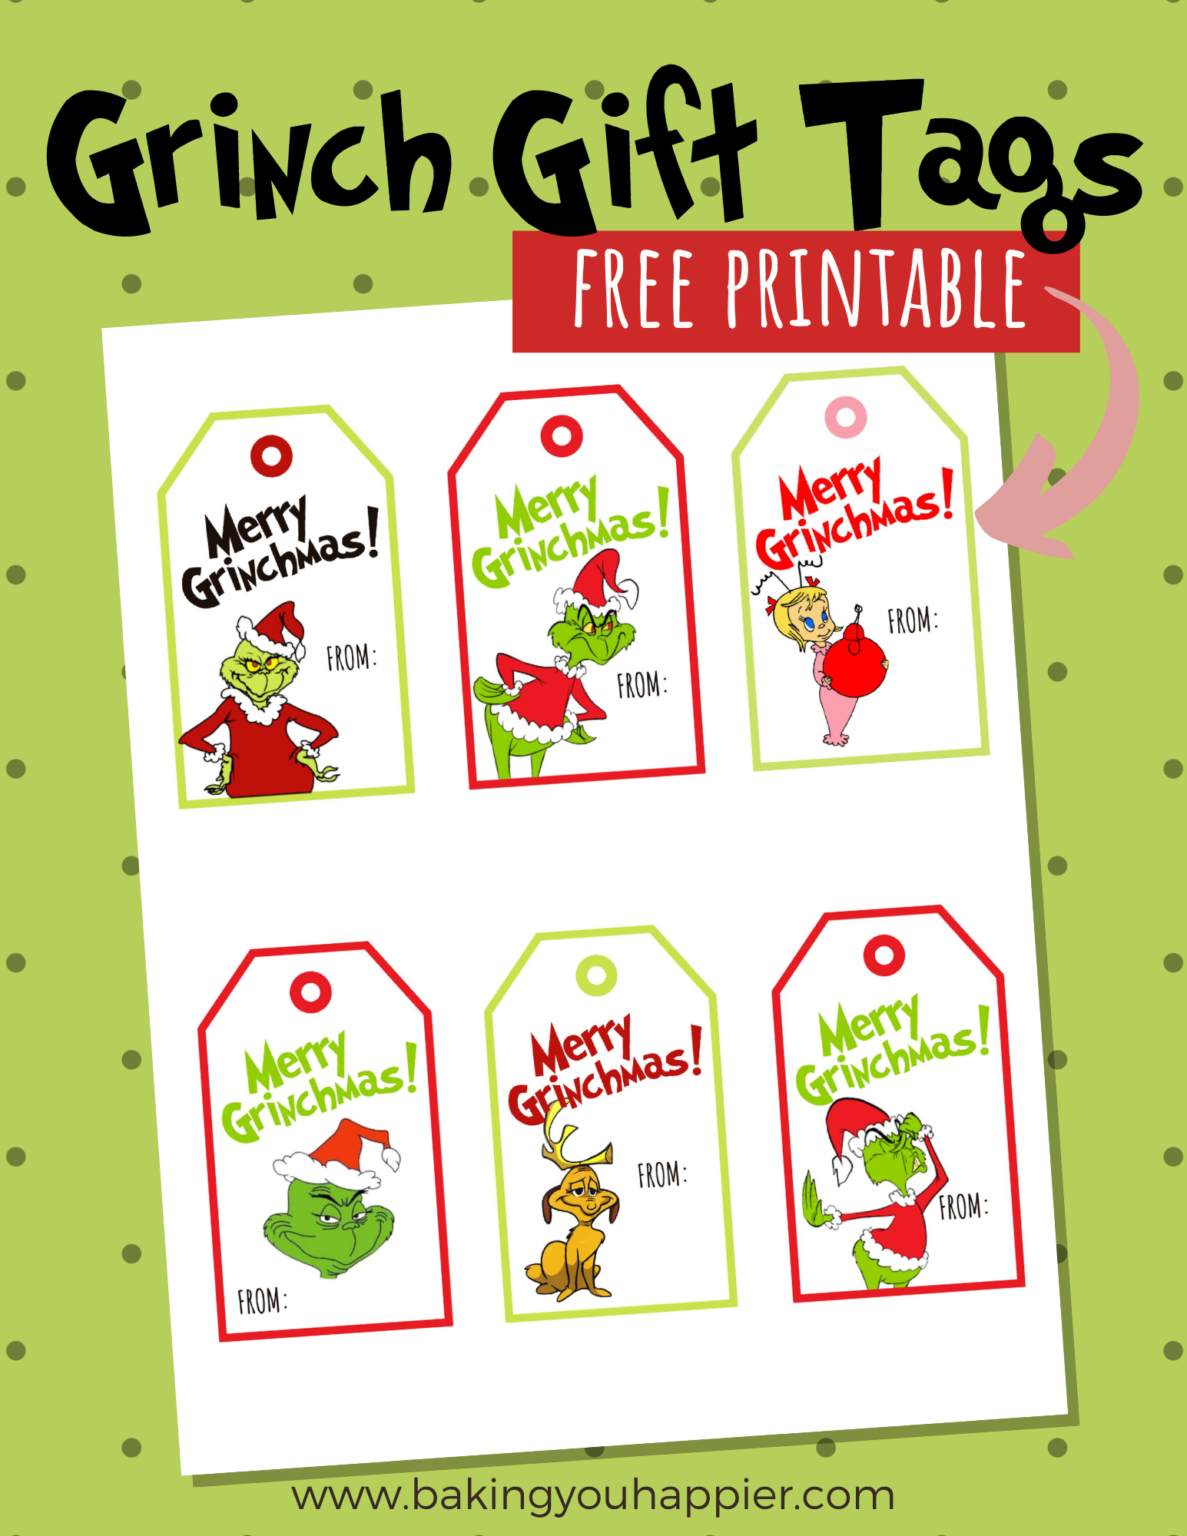 Free Printable Grinch Christmas Gift Tags - Baking You Happier - Free Printable Grinch Gift Tags